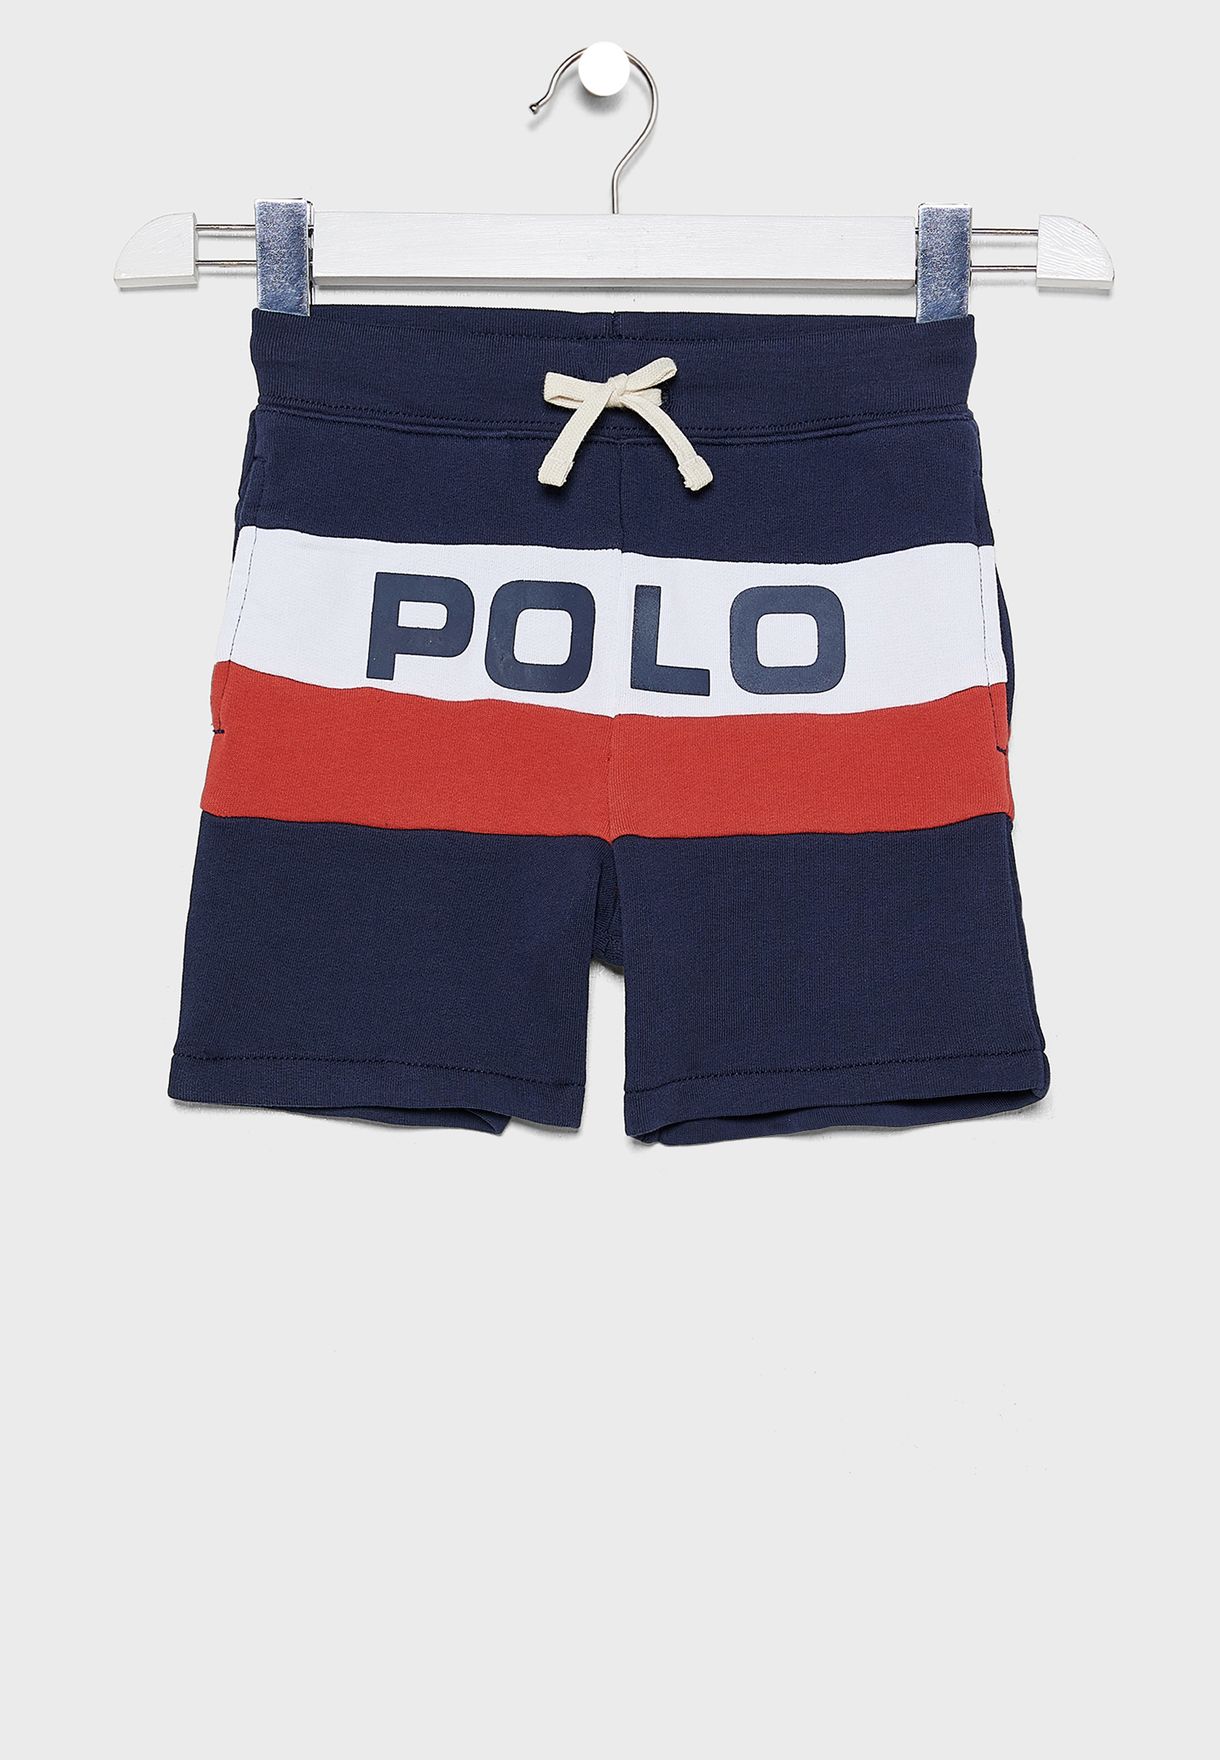 polo terry shorts